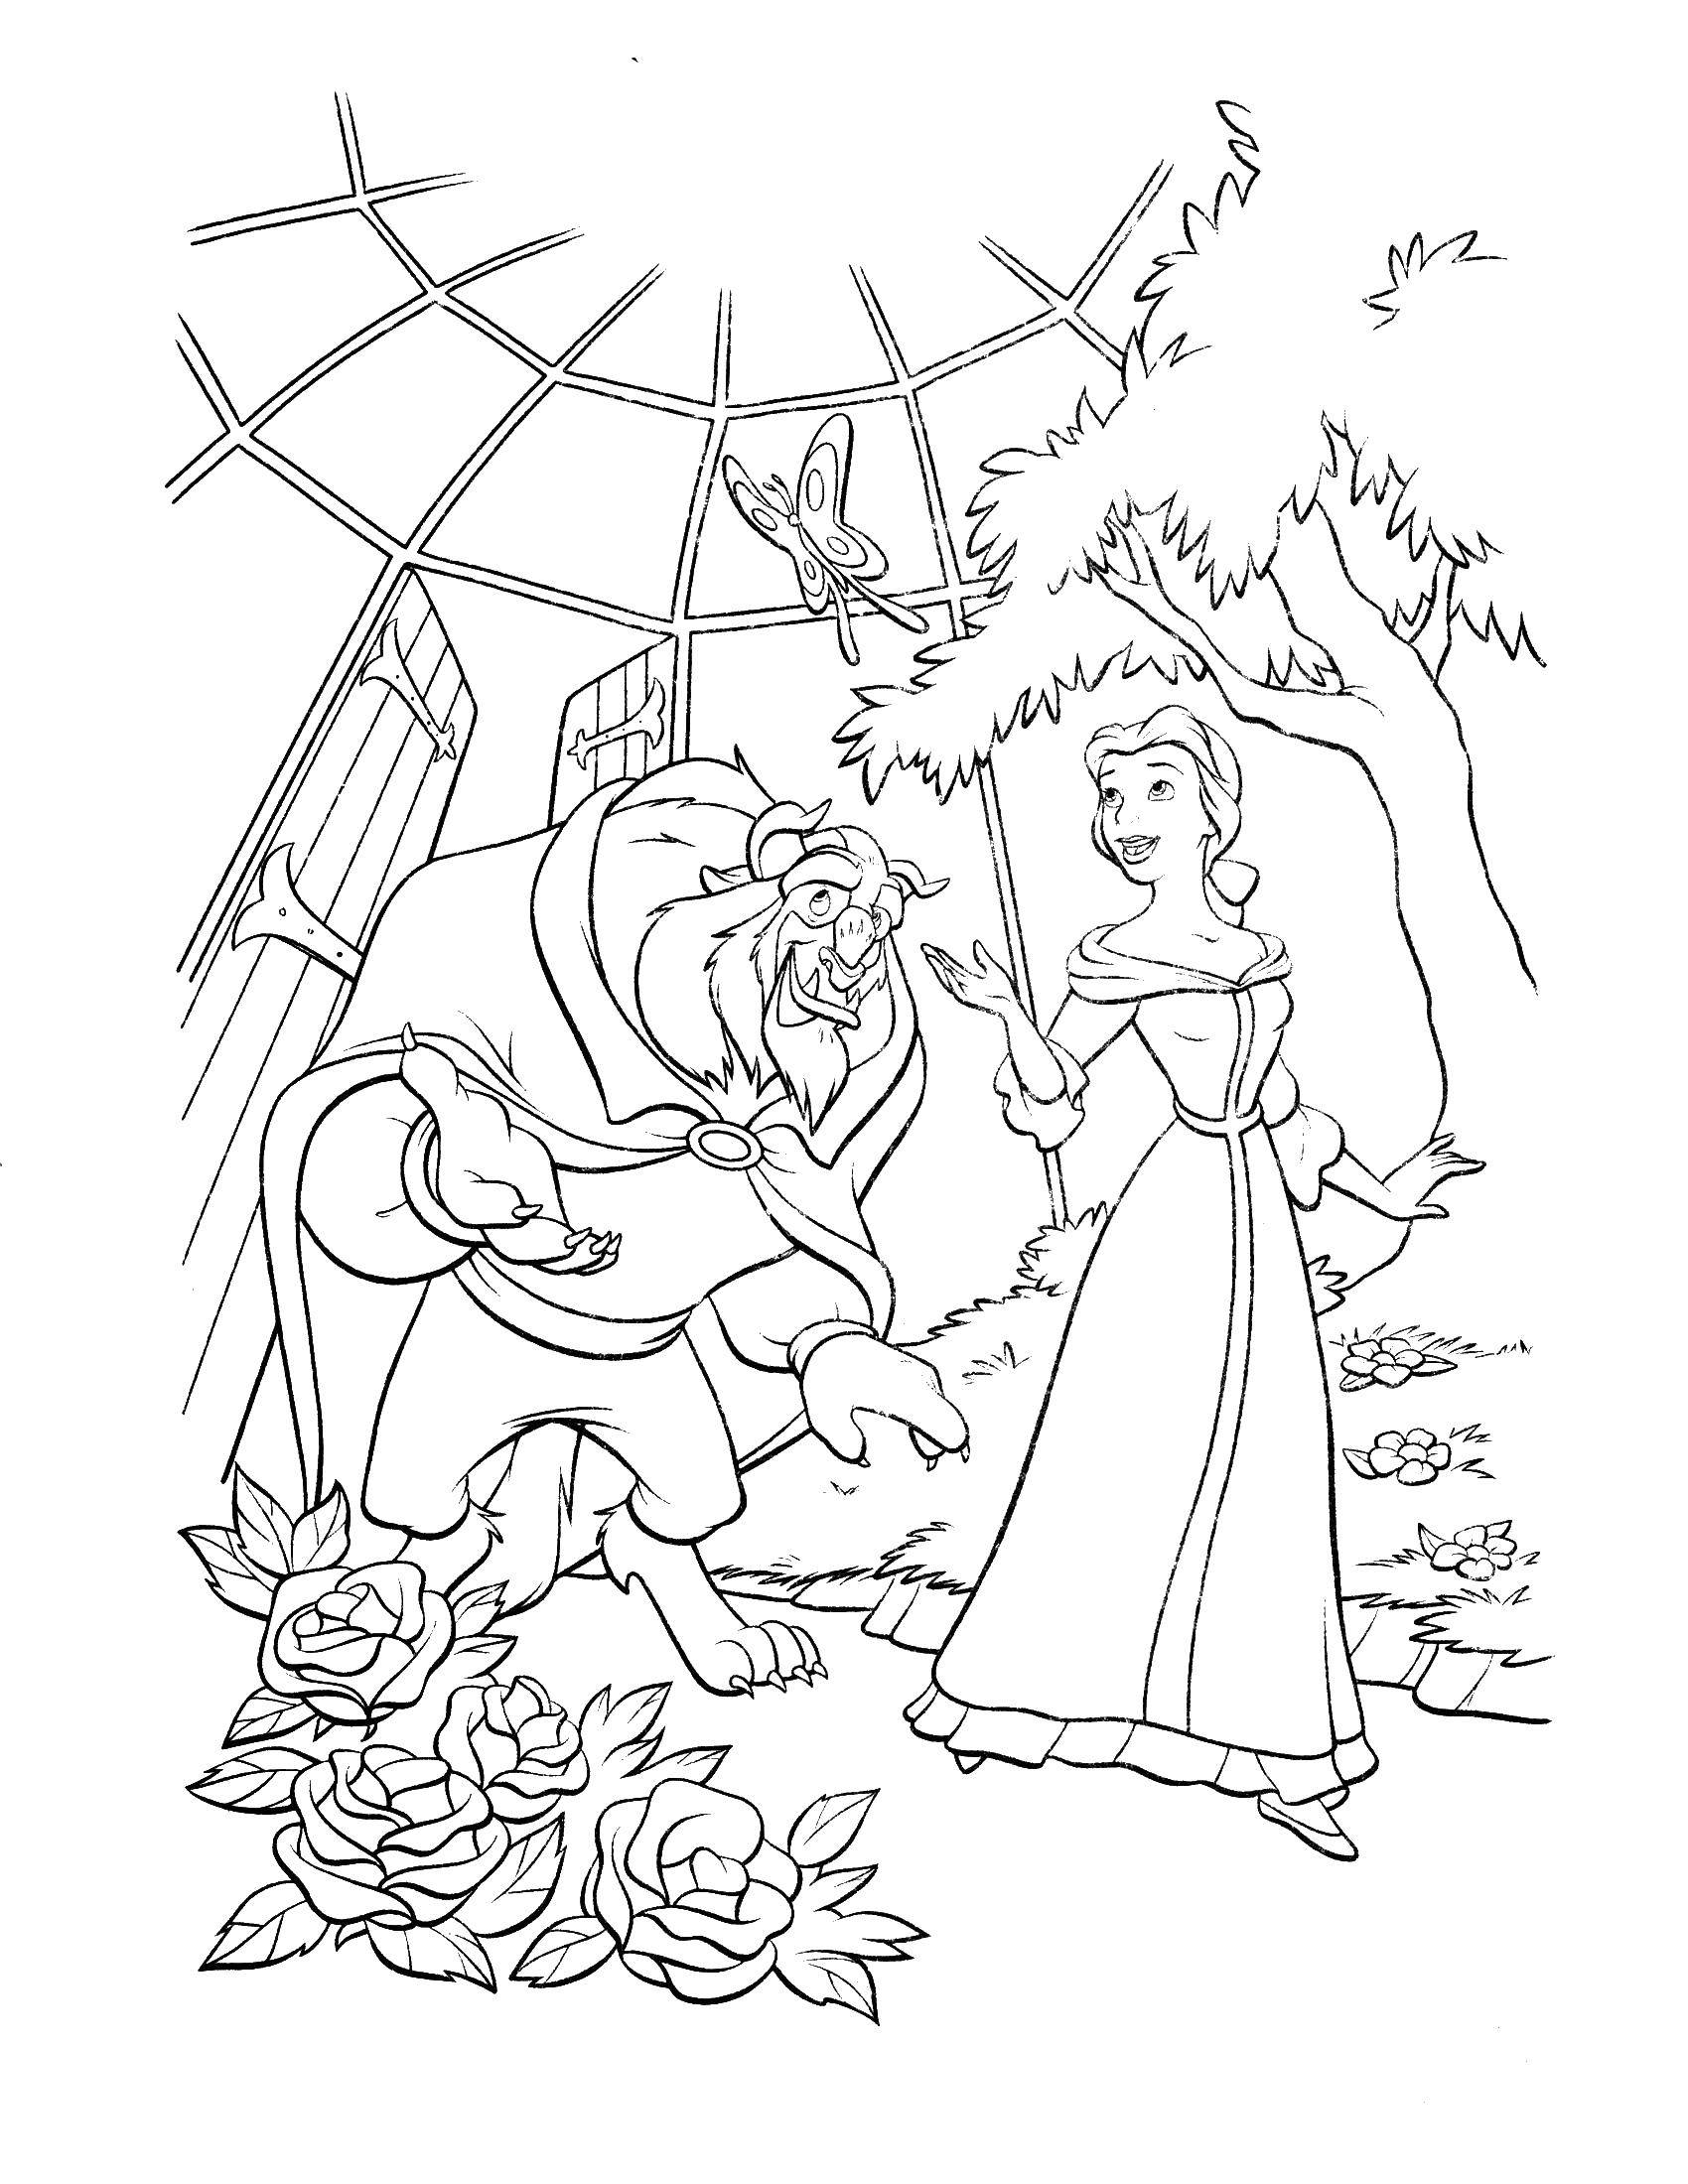 Раскраски из мультфильма Красавица и чудовище для детей  Красавица белл и чудовище гуляют в саду